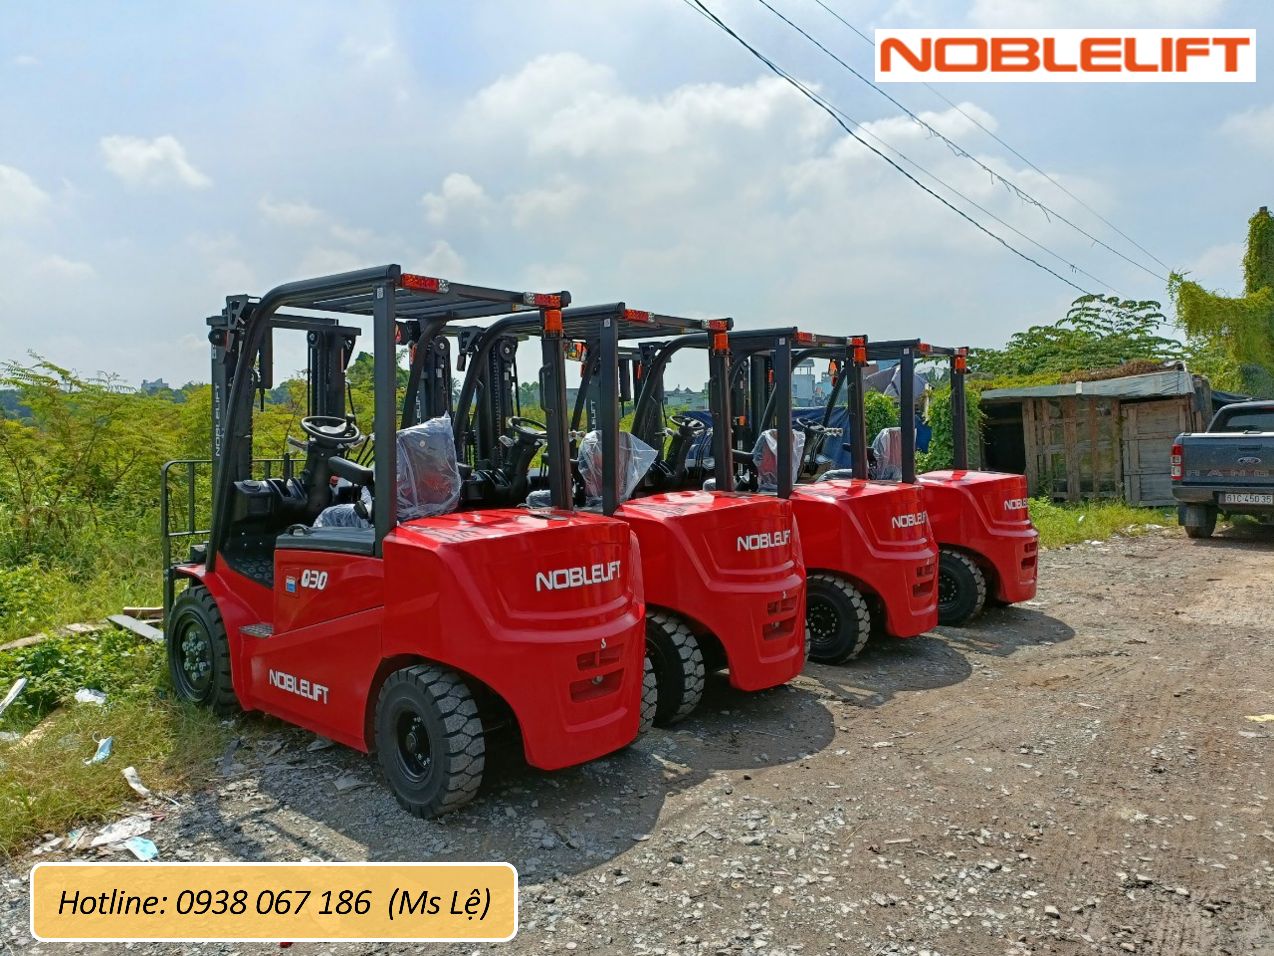 Noblelift Việt Nam – Nhà cung cấp xe nâng điện ngồi lái 3 tấn chất lượng.